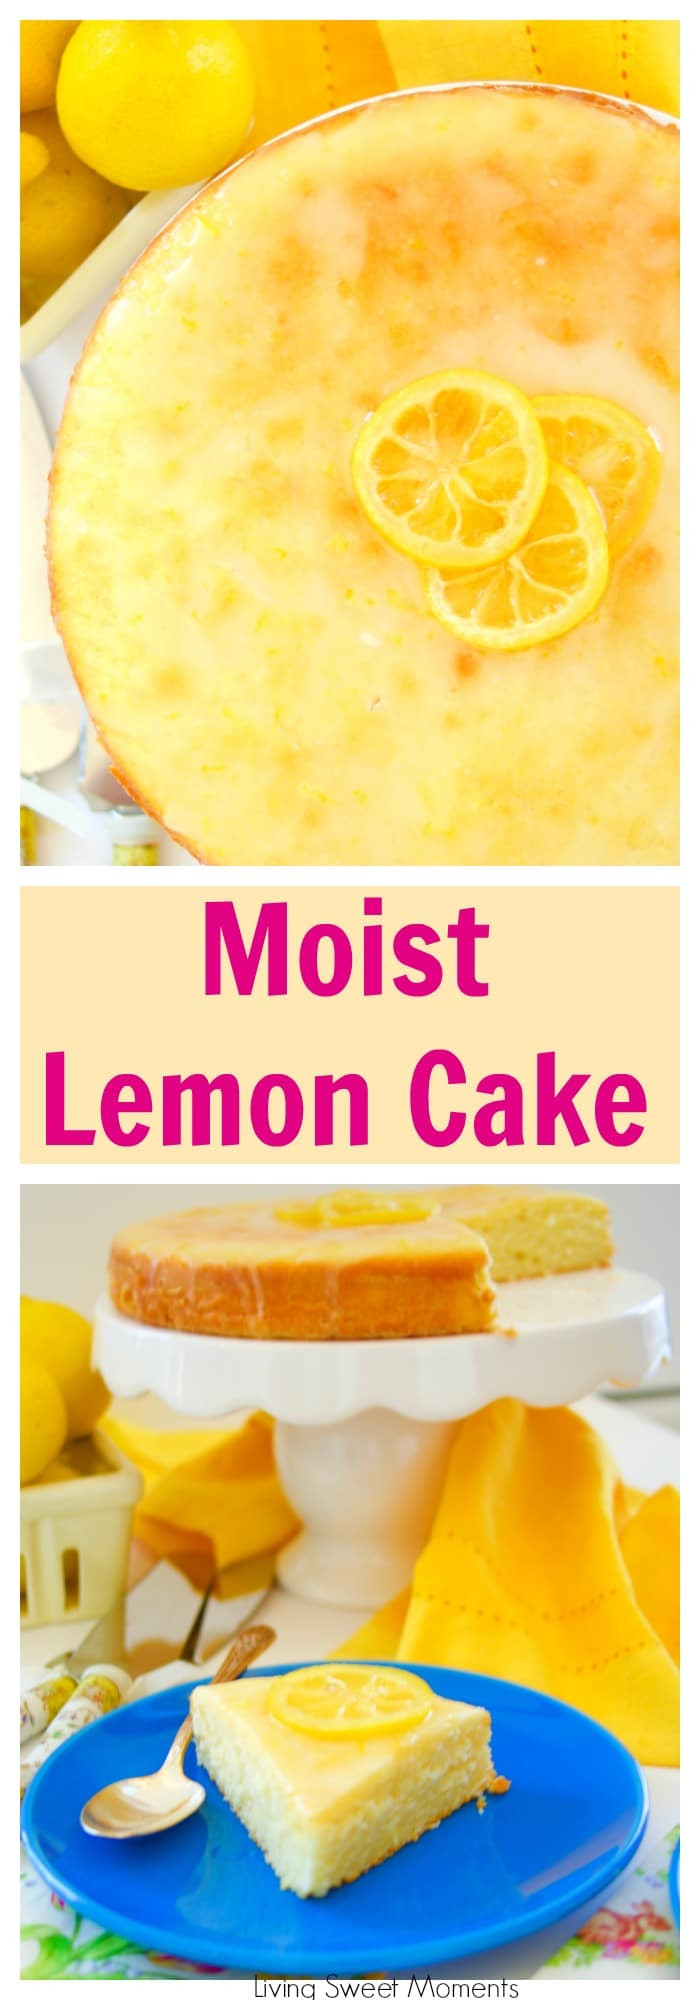 Easy Moist Lemon Cake Recipe
 Moist Lemon Cake Recipe Living Sweet Moments